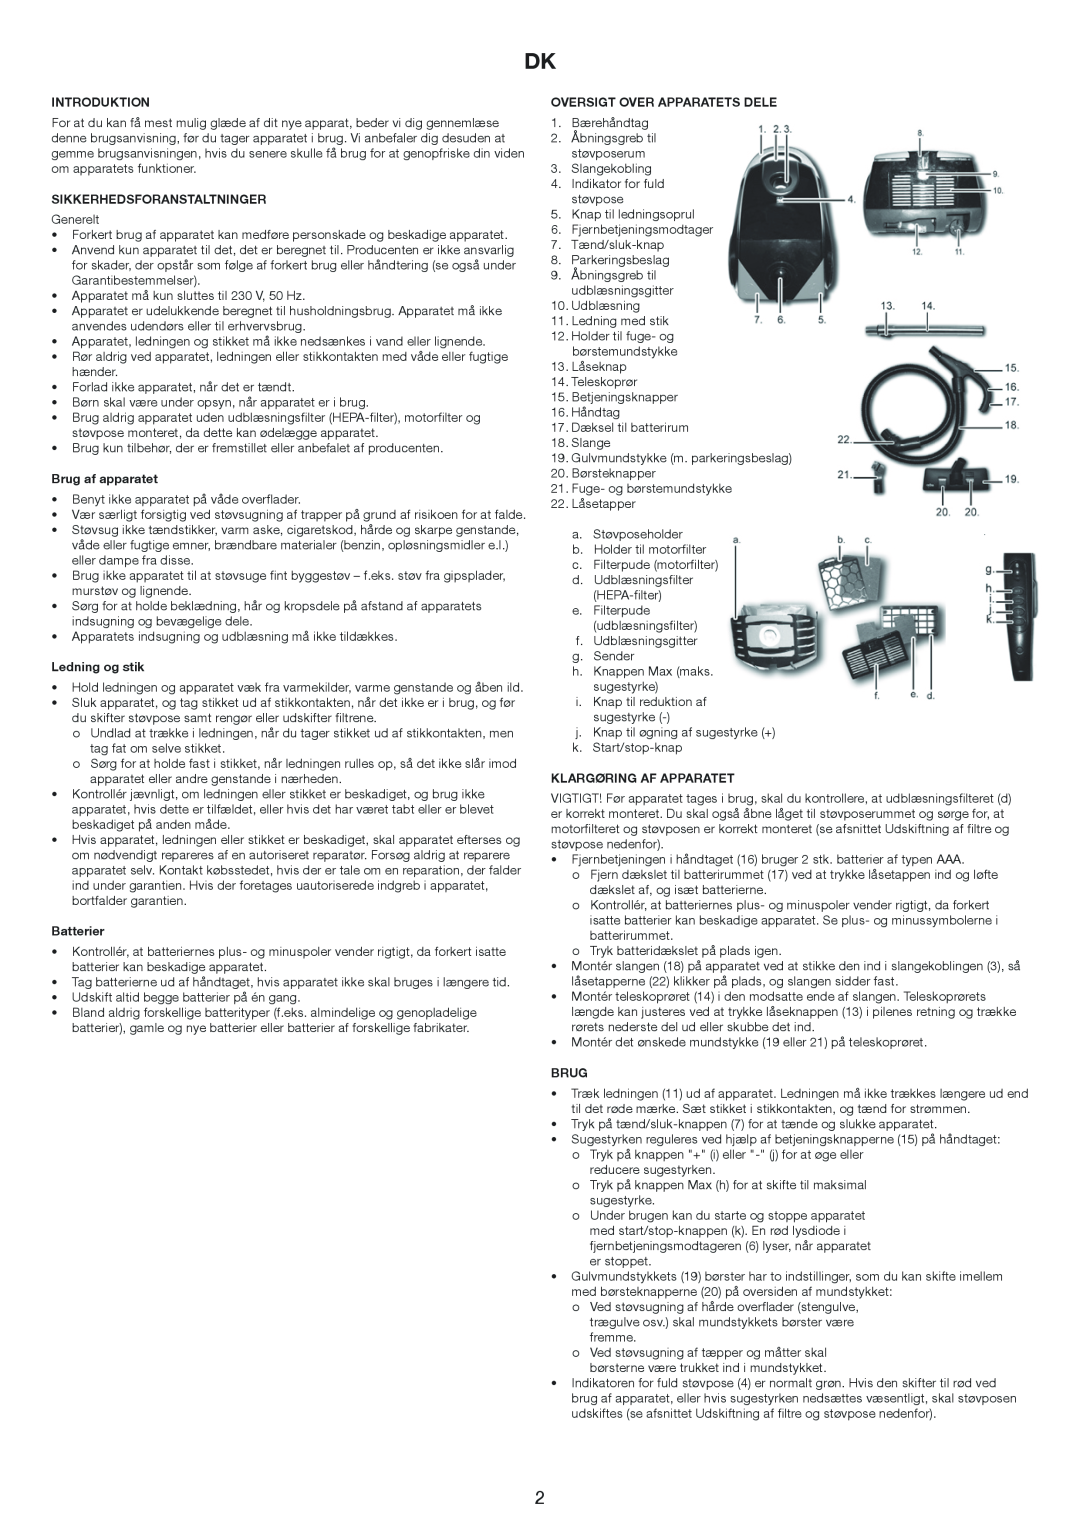 Melissa 640-174 manual Introduktion, Sikkerhedsforanstaltninger, Brug af apparatet, Ledning og stik, Batterier 